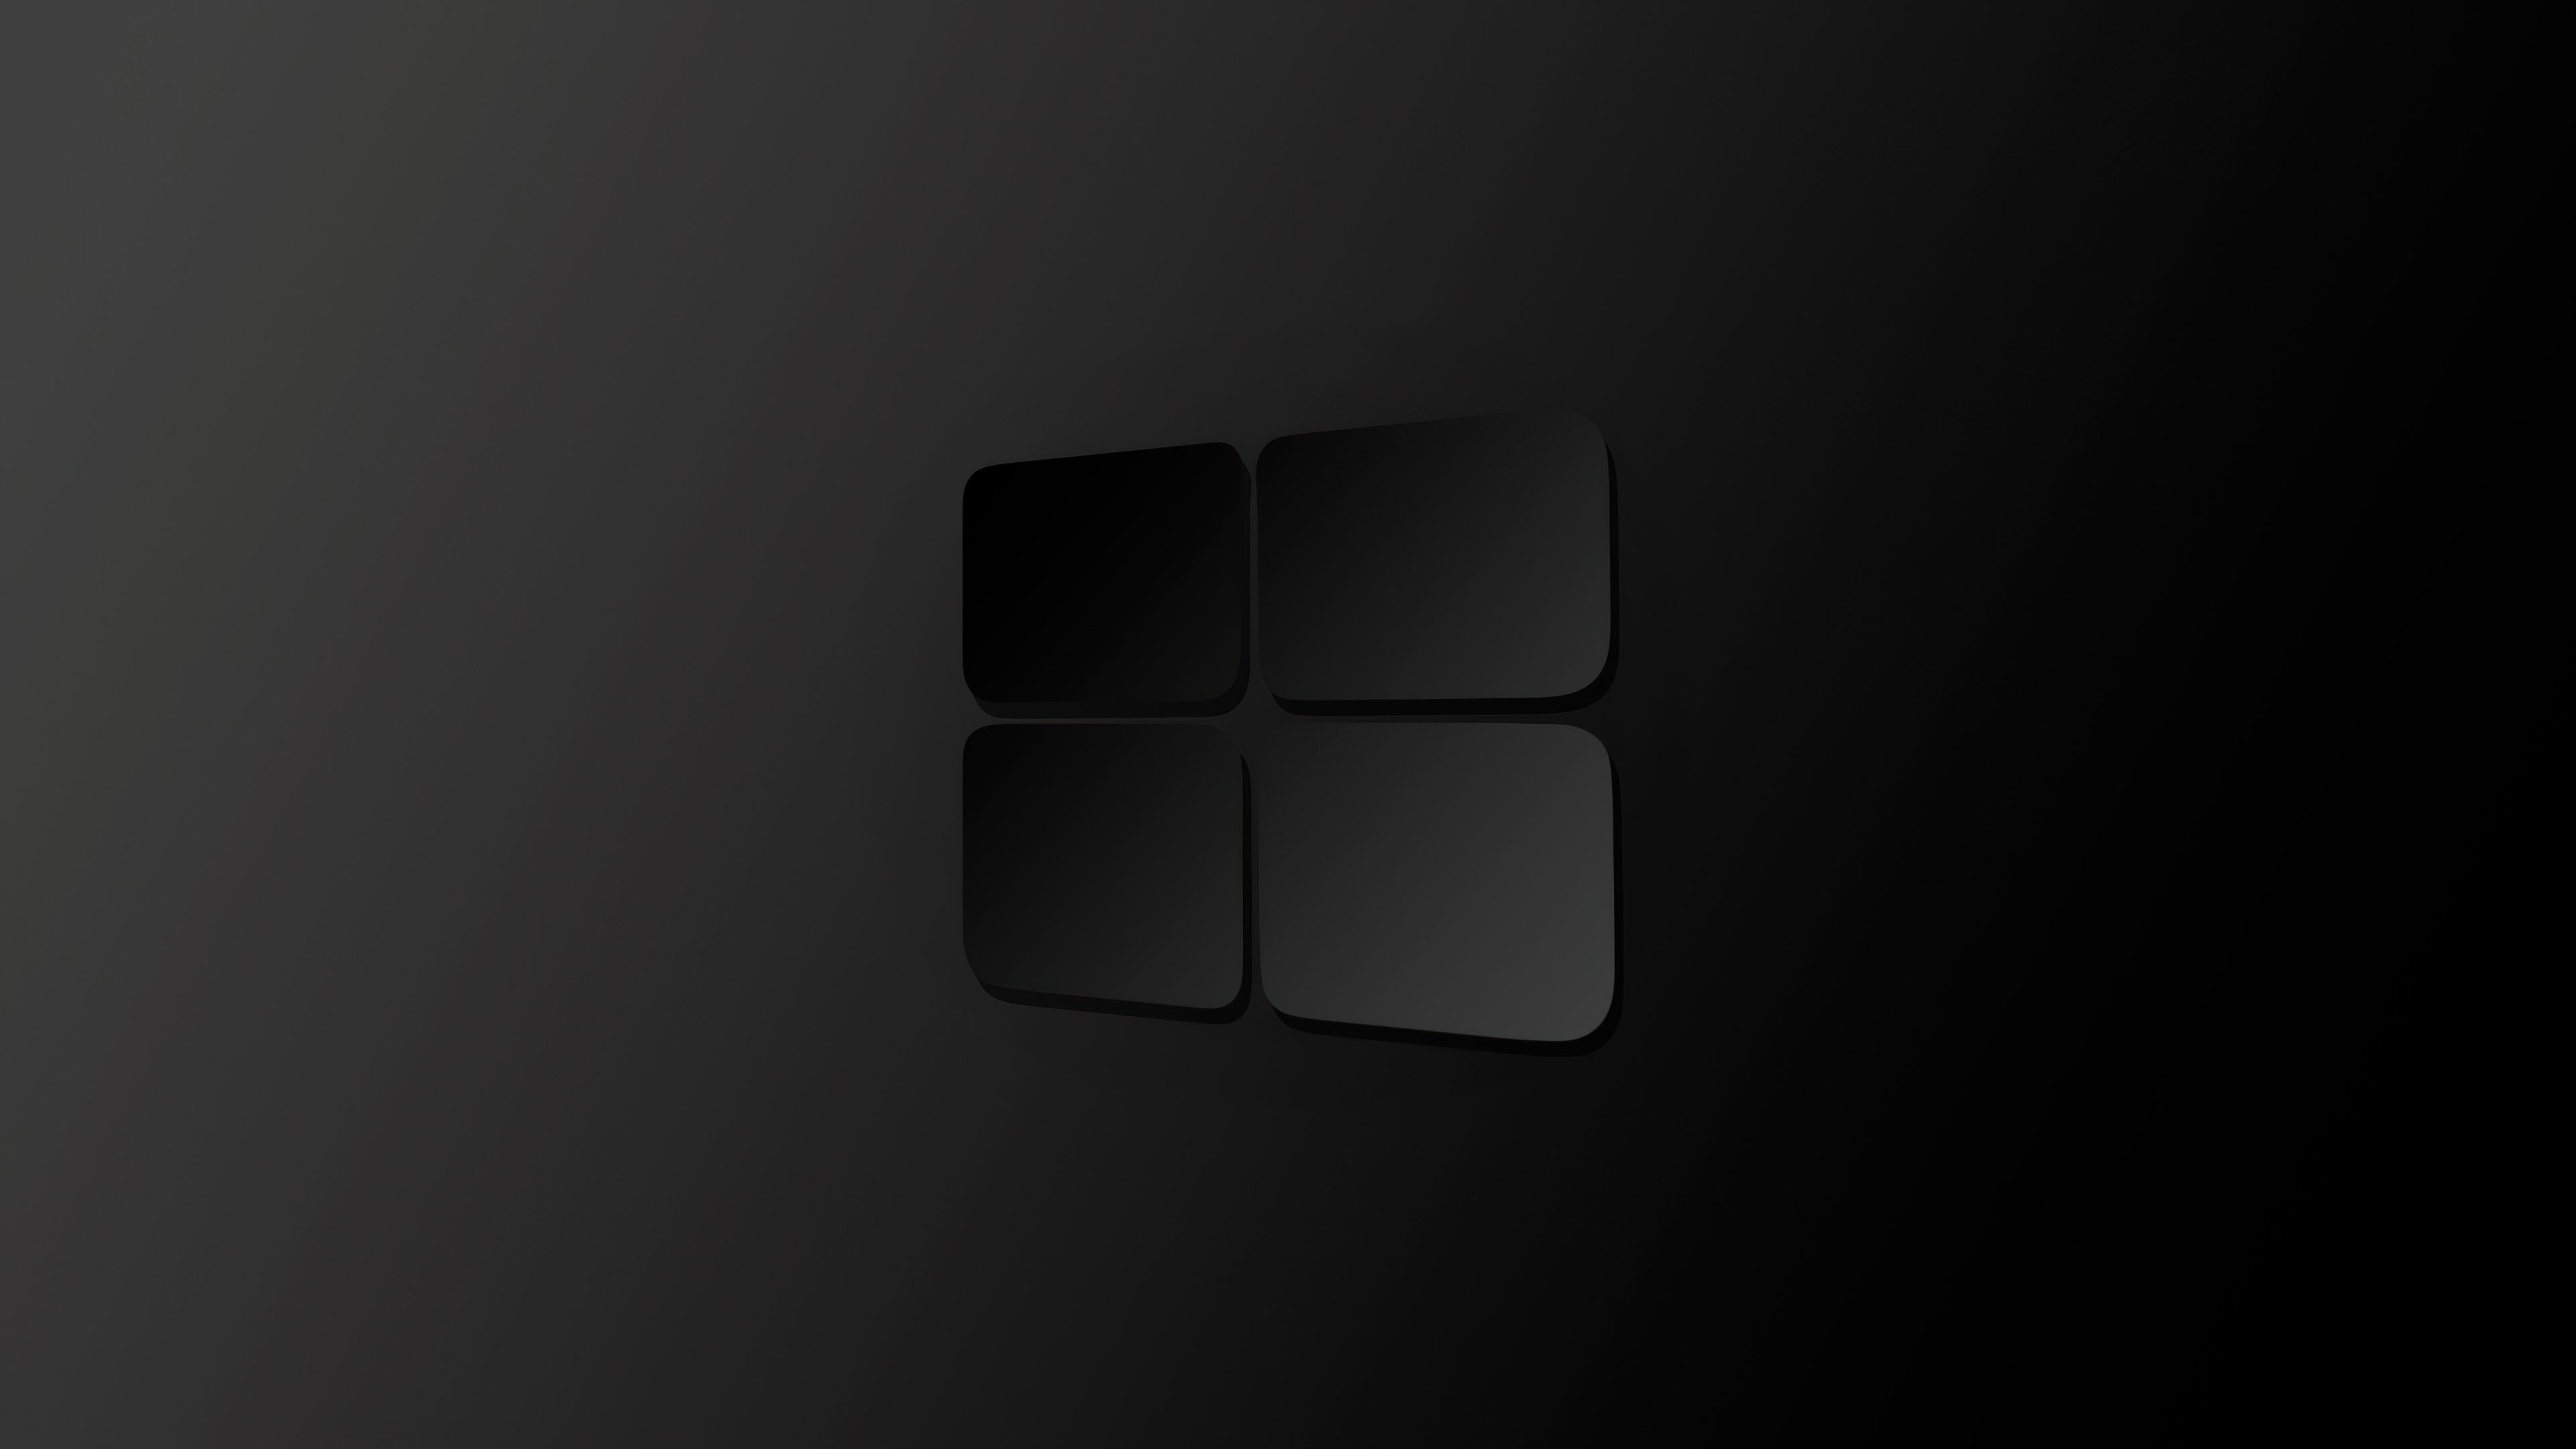 Dark Theme Wallpaper 4k For Windows 10 ~ Windows Dark Background ...